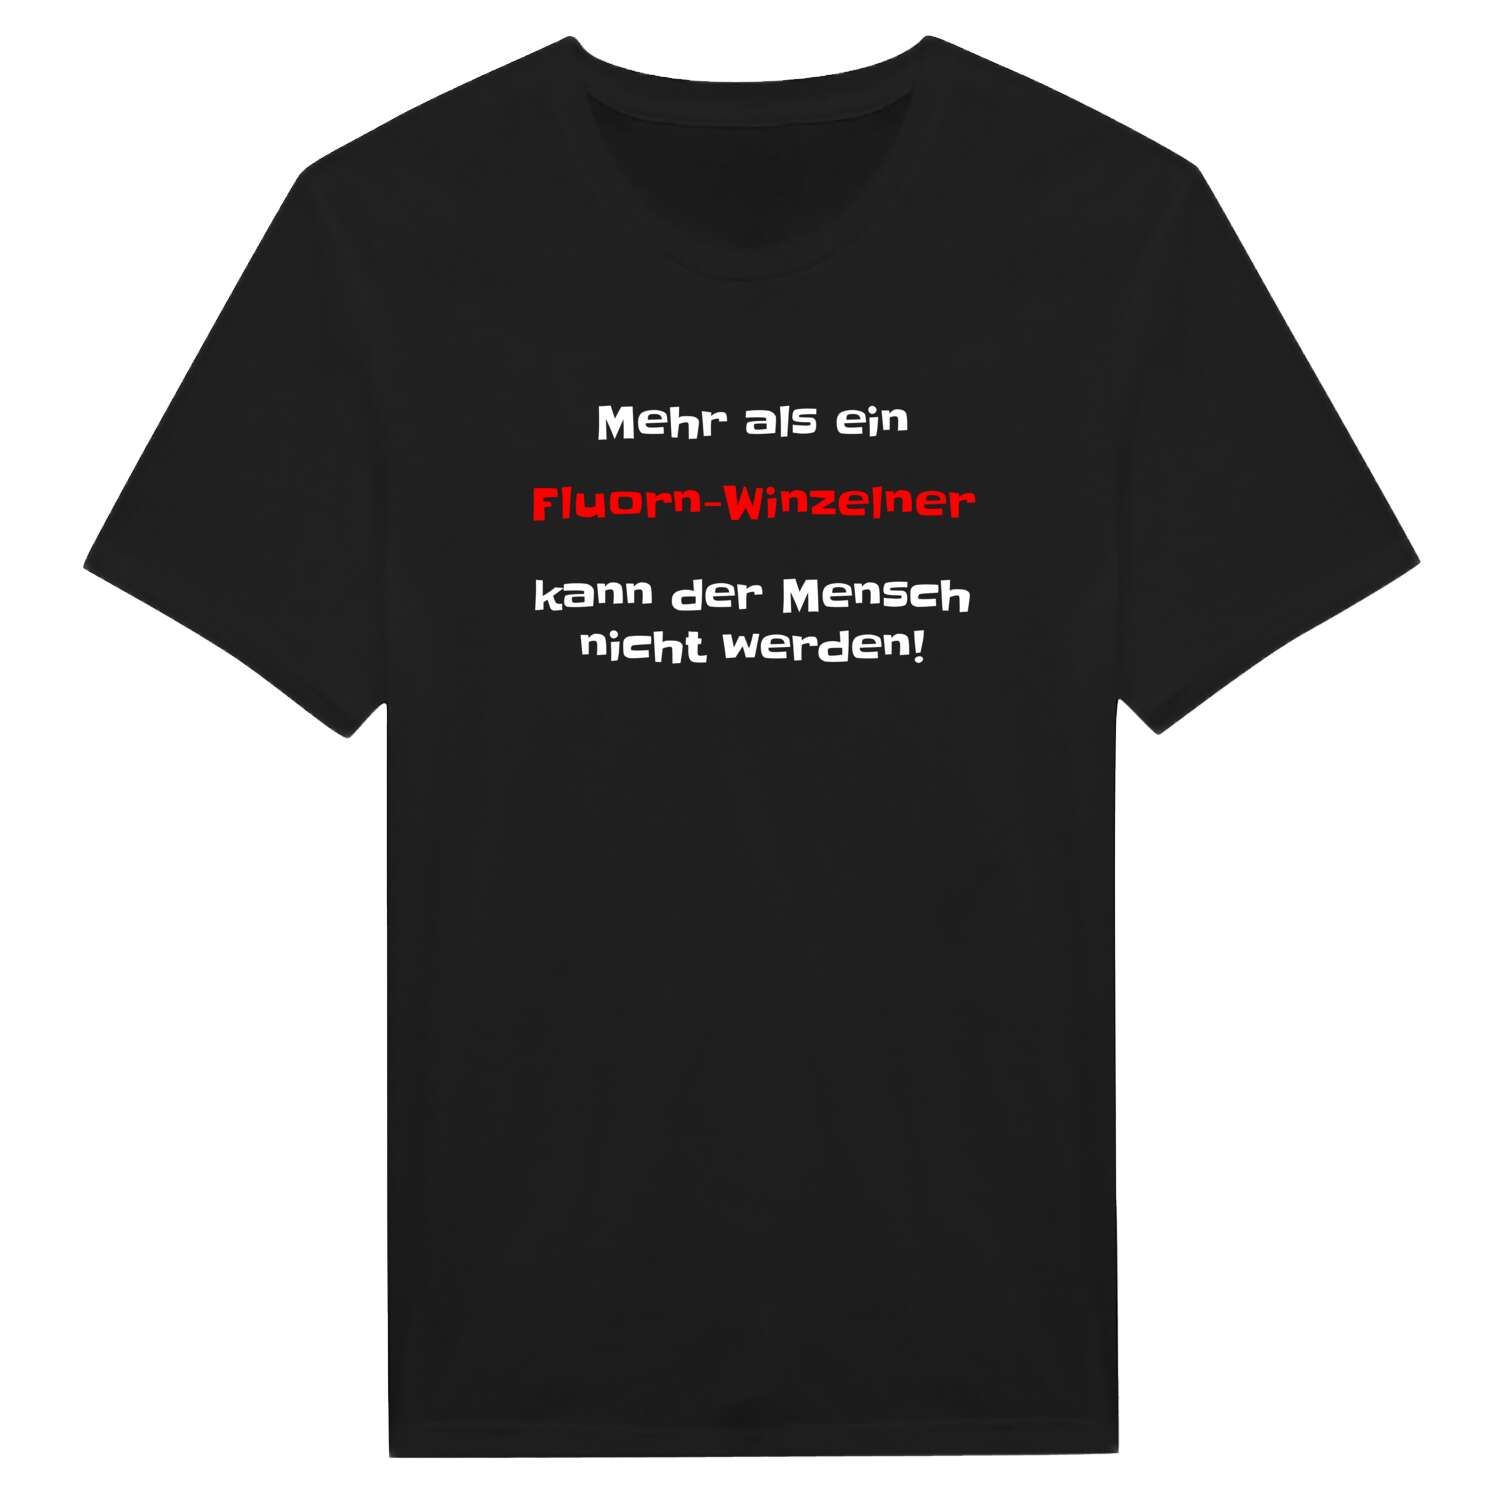 Fluorn-Winzeln T-Shirt »Mehr als ein«